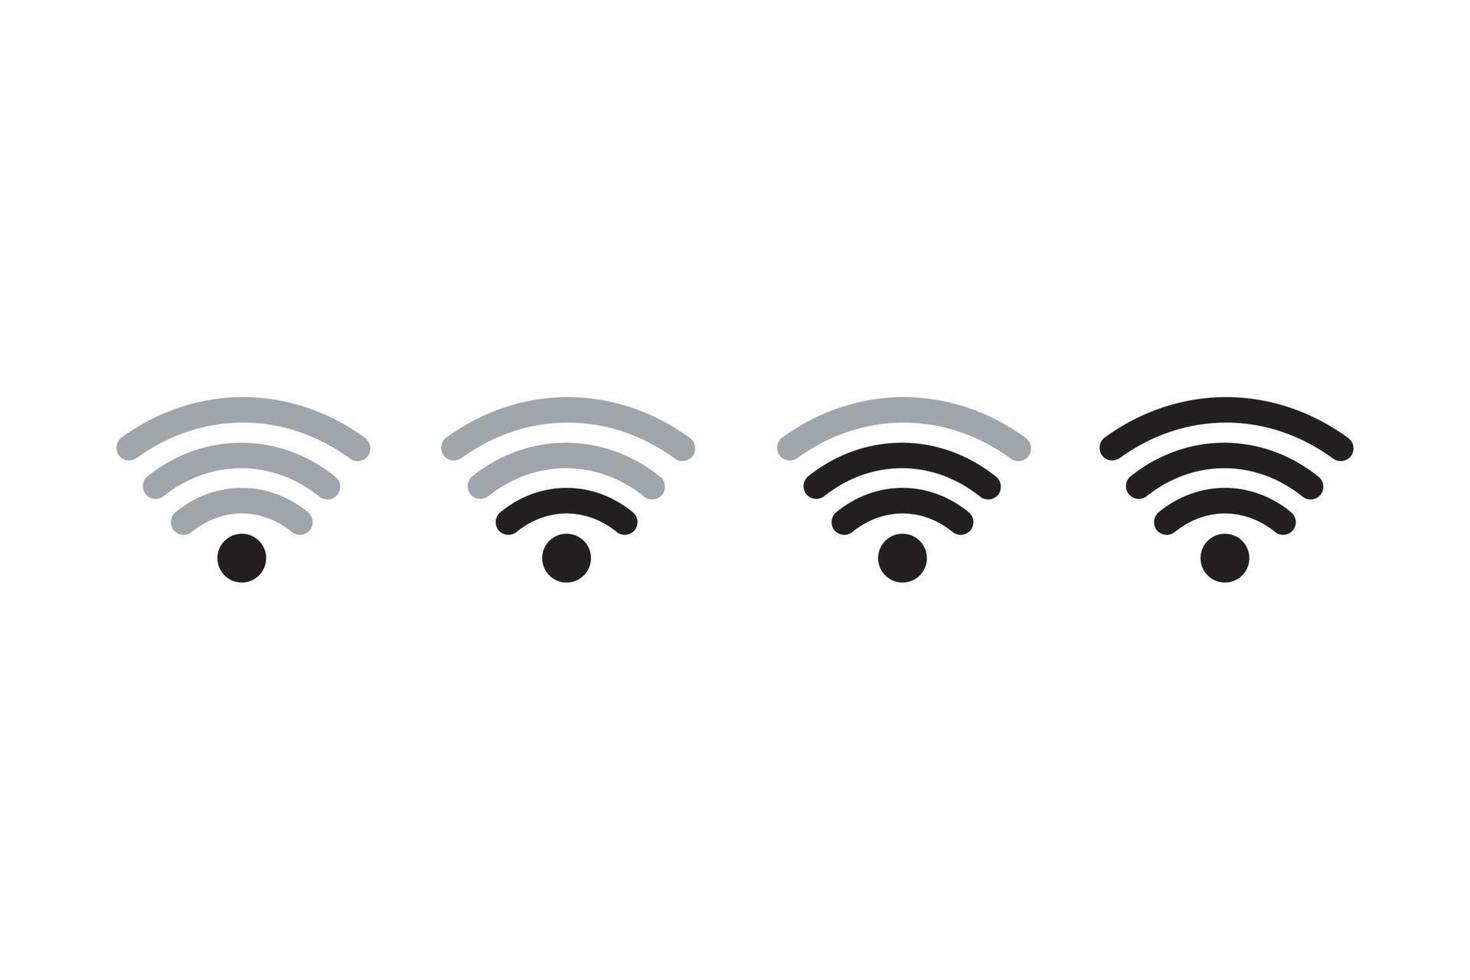 Reihe von Vektor-Wireless-WLAN-Icons isoliert auf weißem Hintergrund vektor